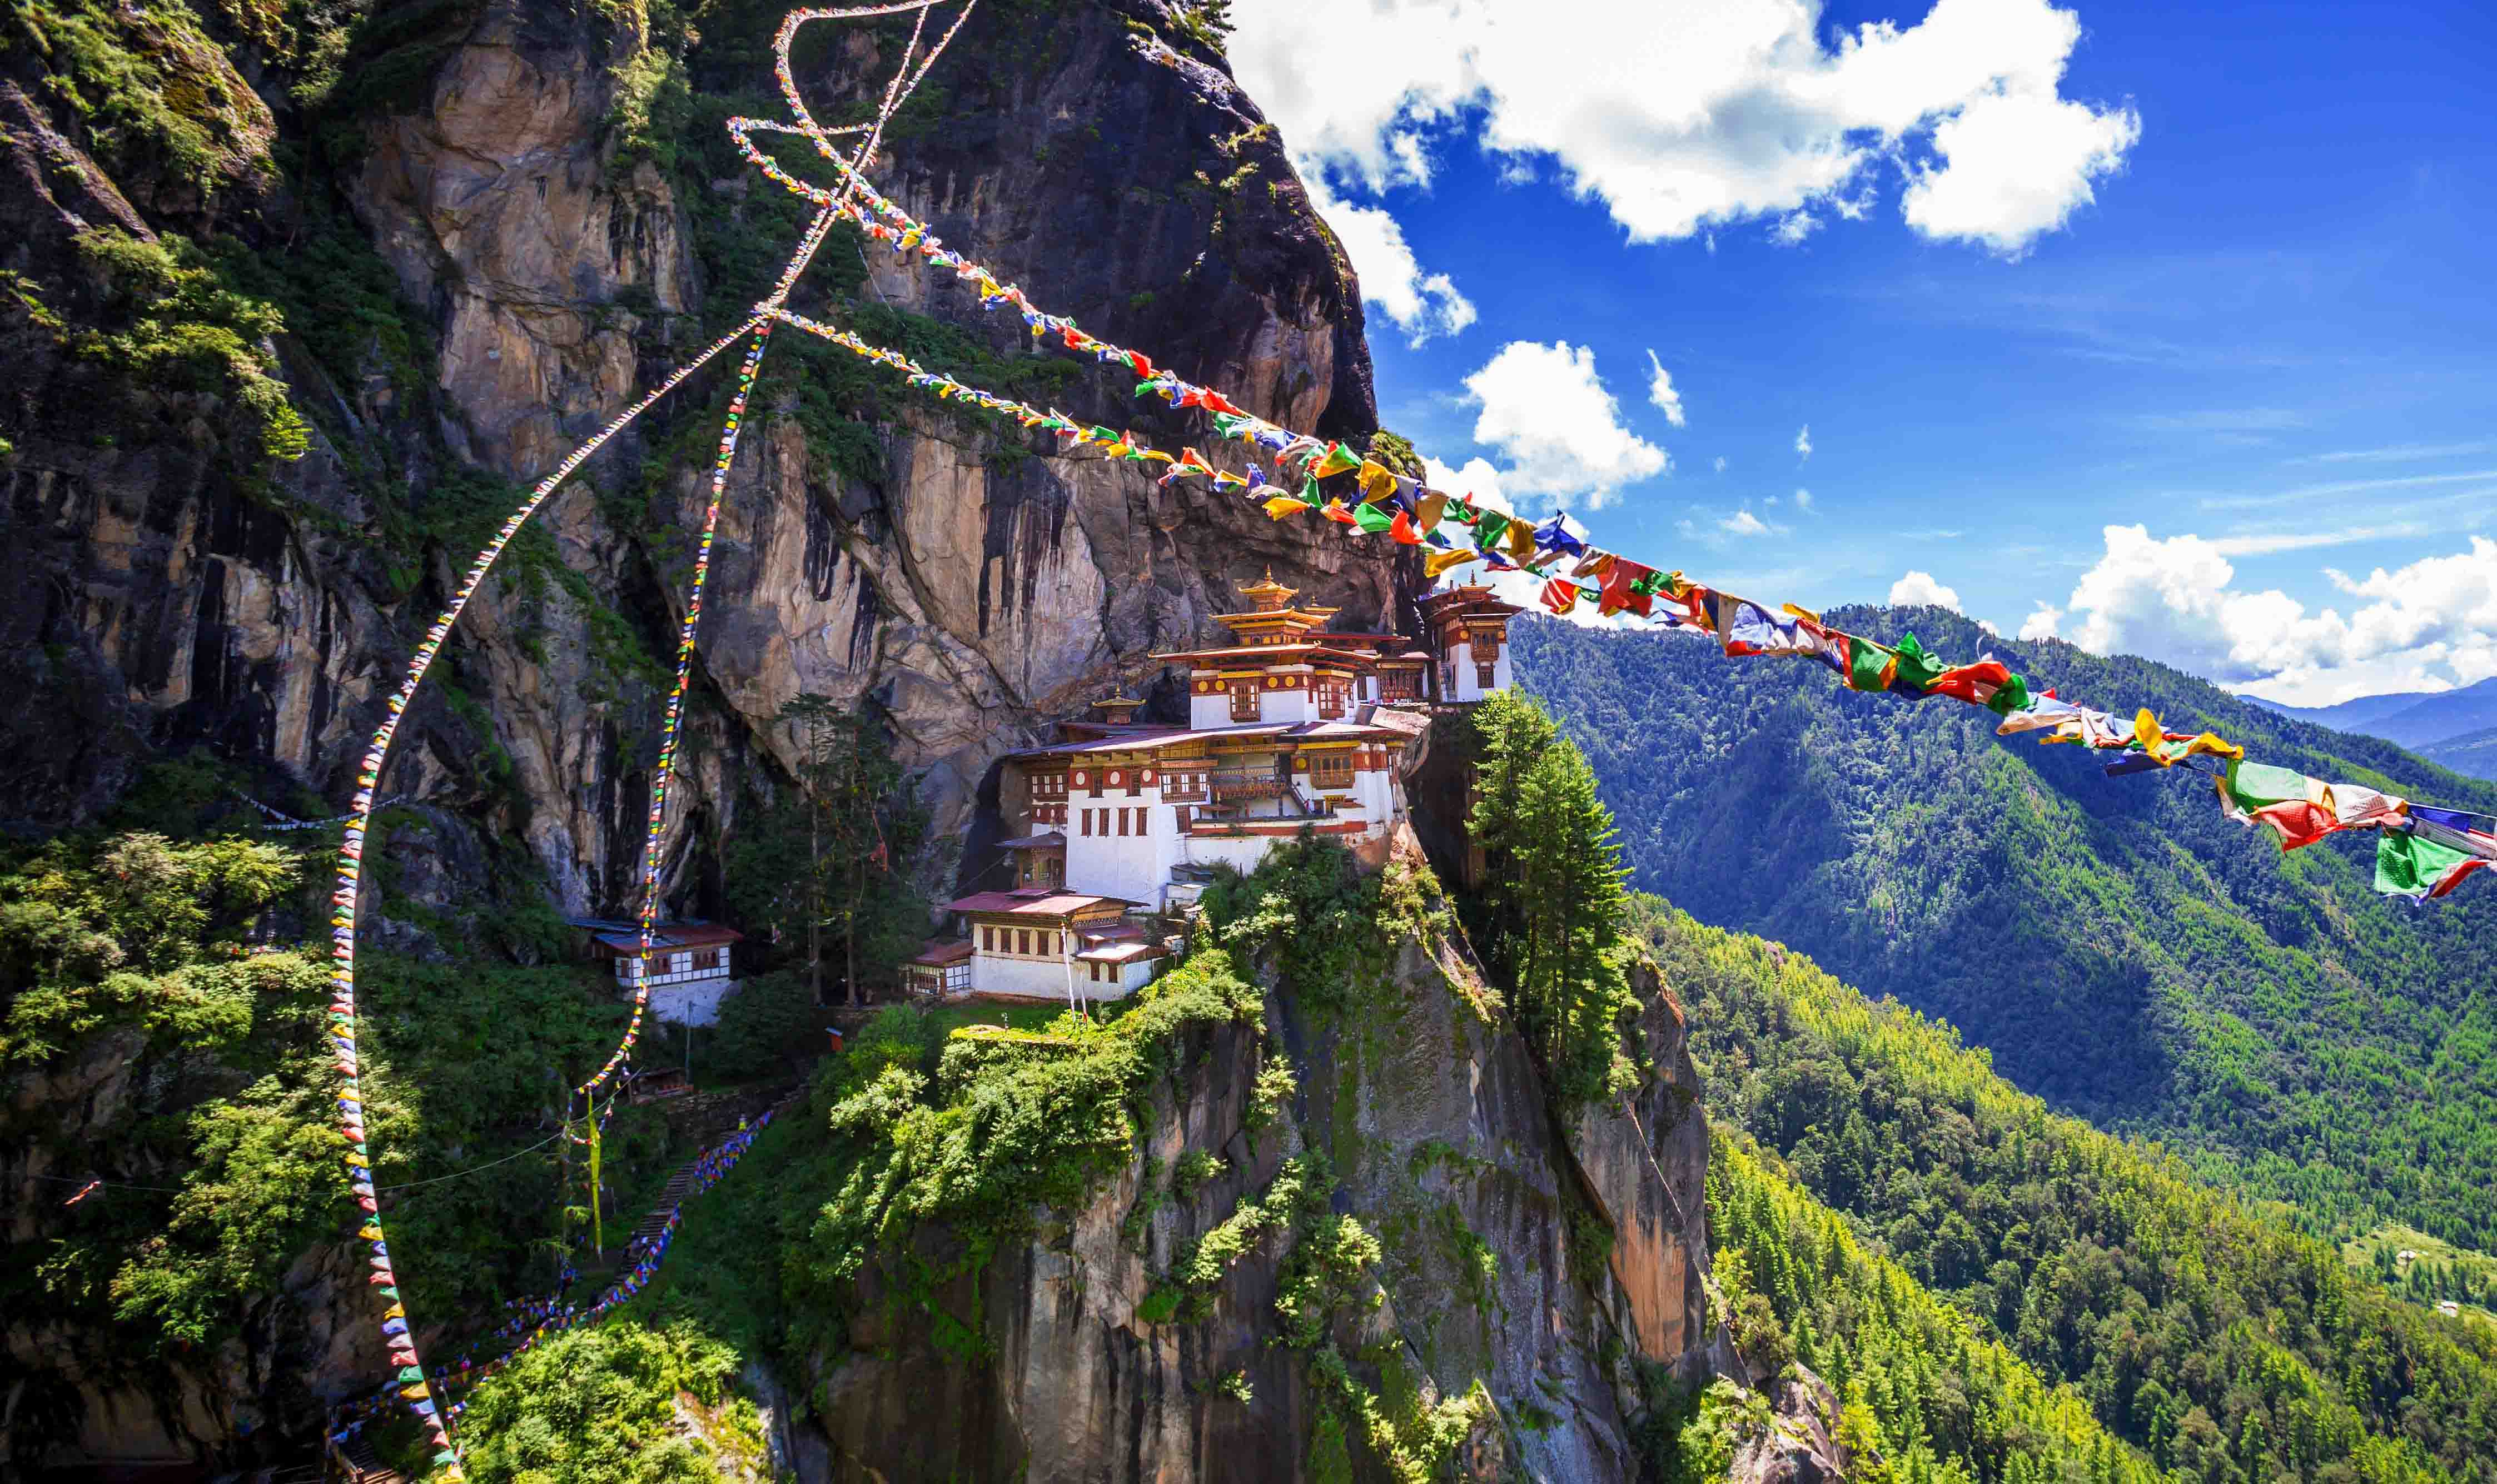 Taktsang Monastery – The Tiger’s Nest